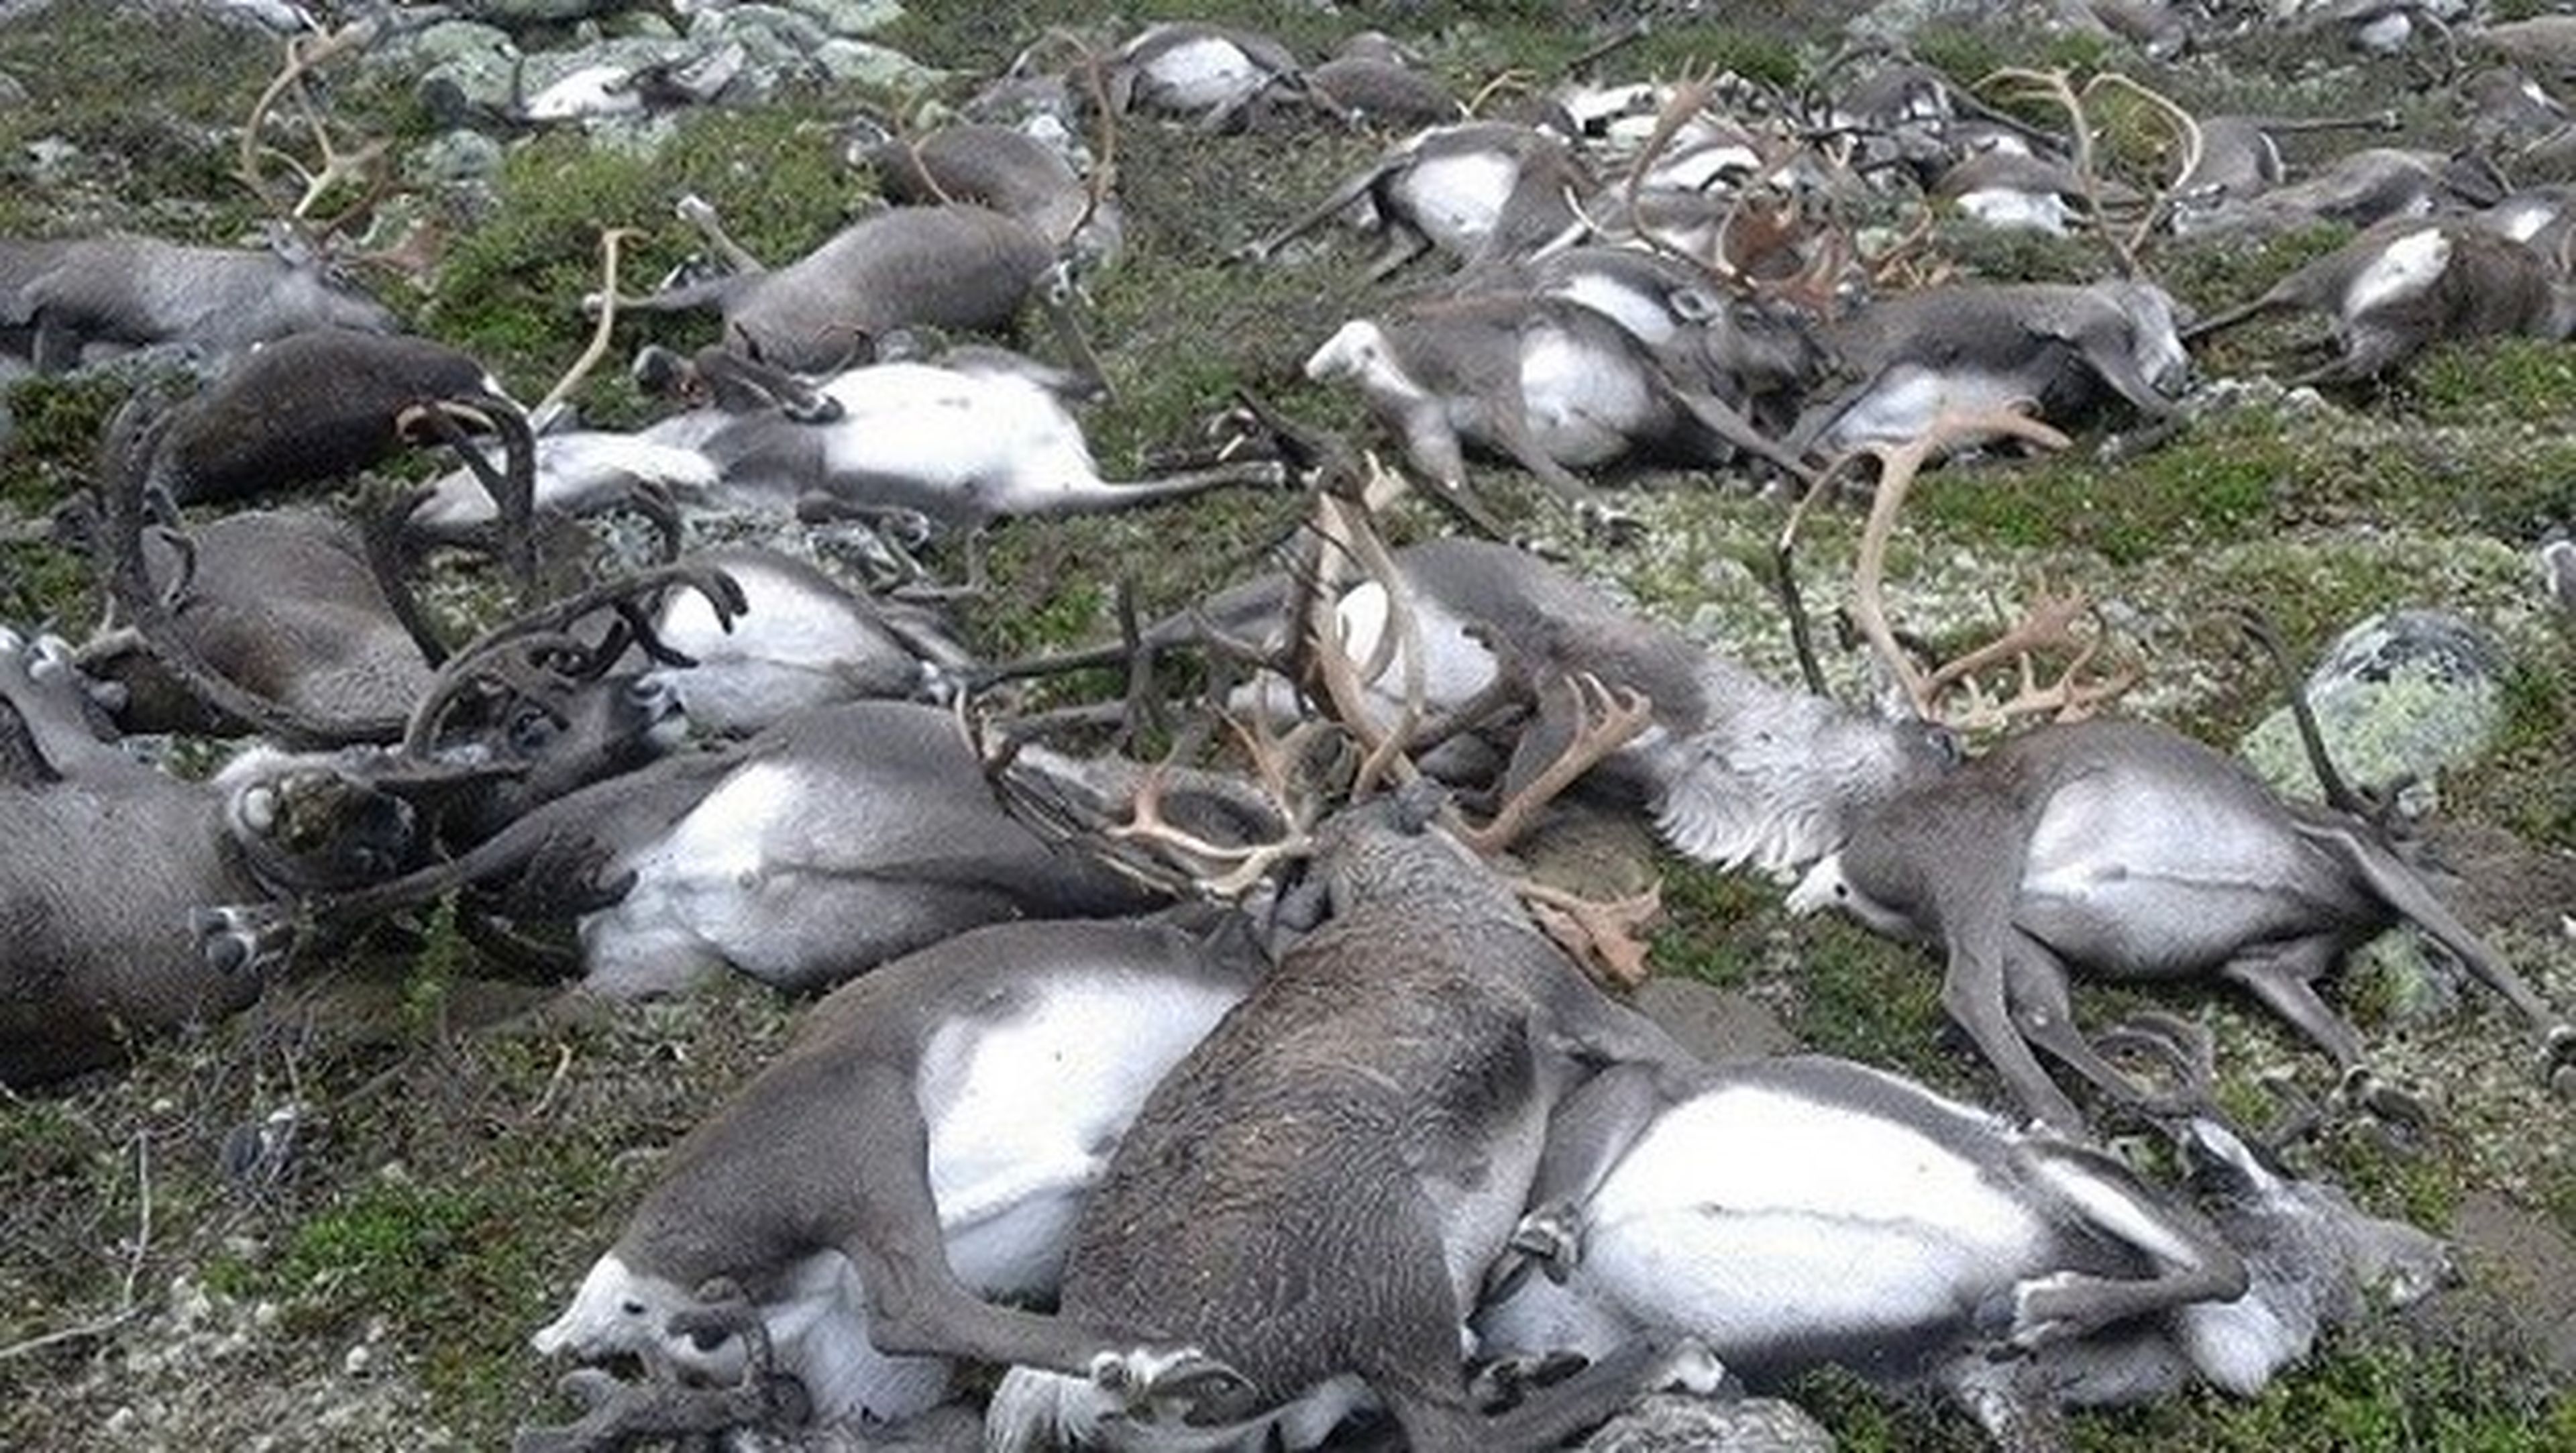 Un rayo mata a más de 300 renos en Noruega